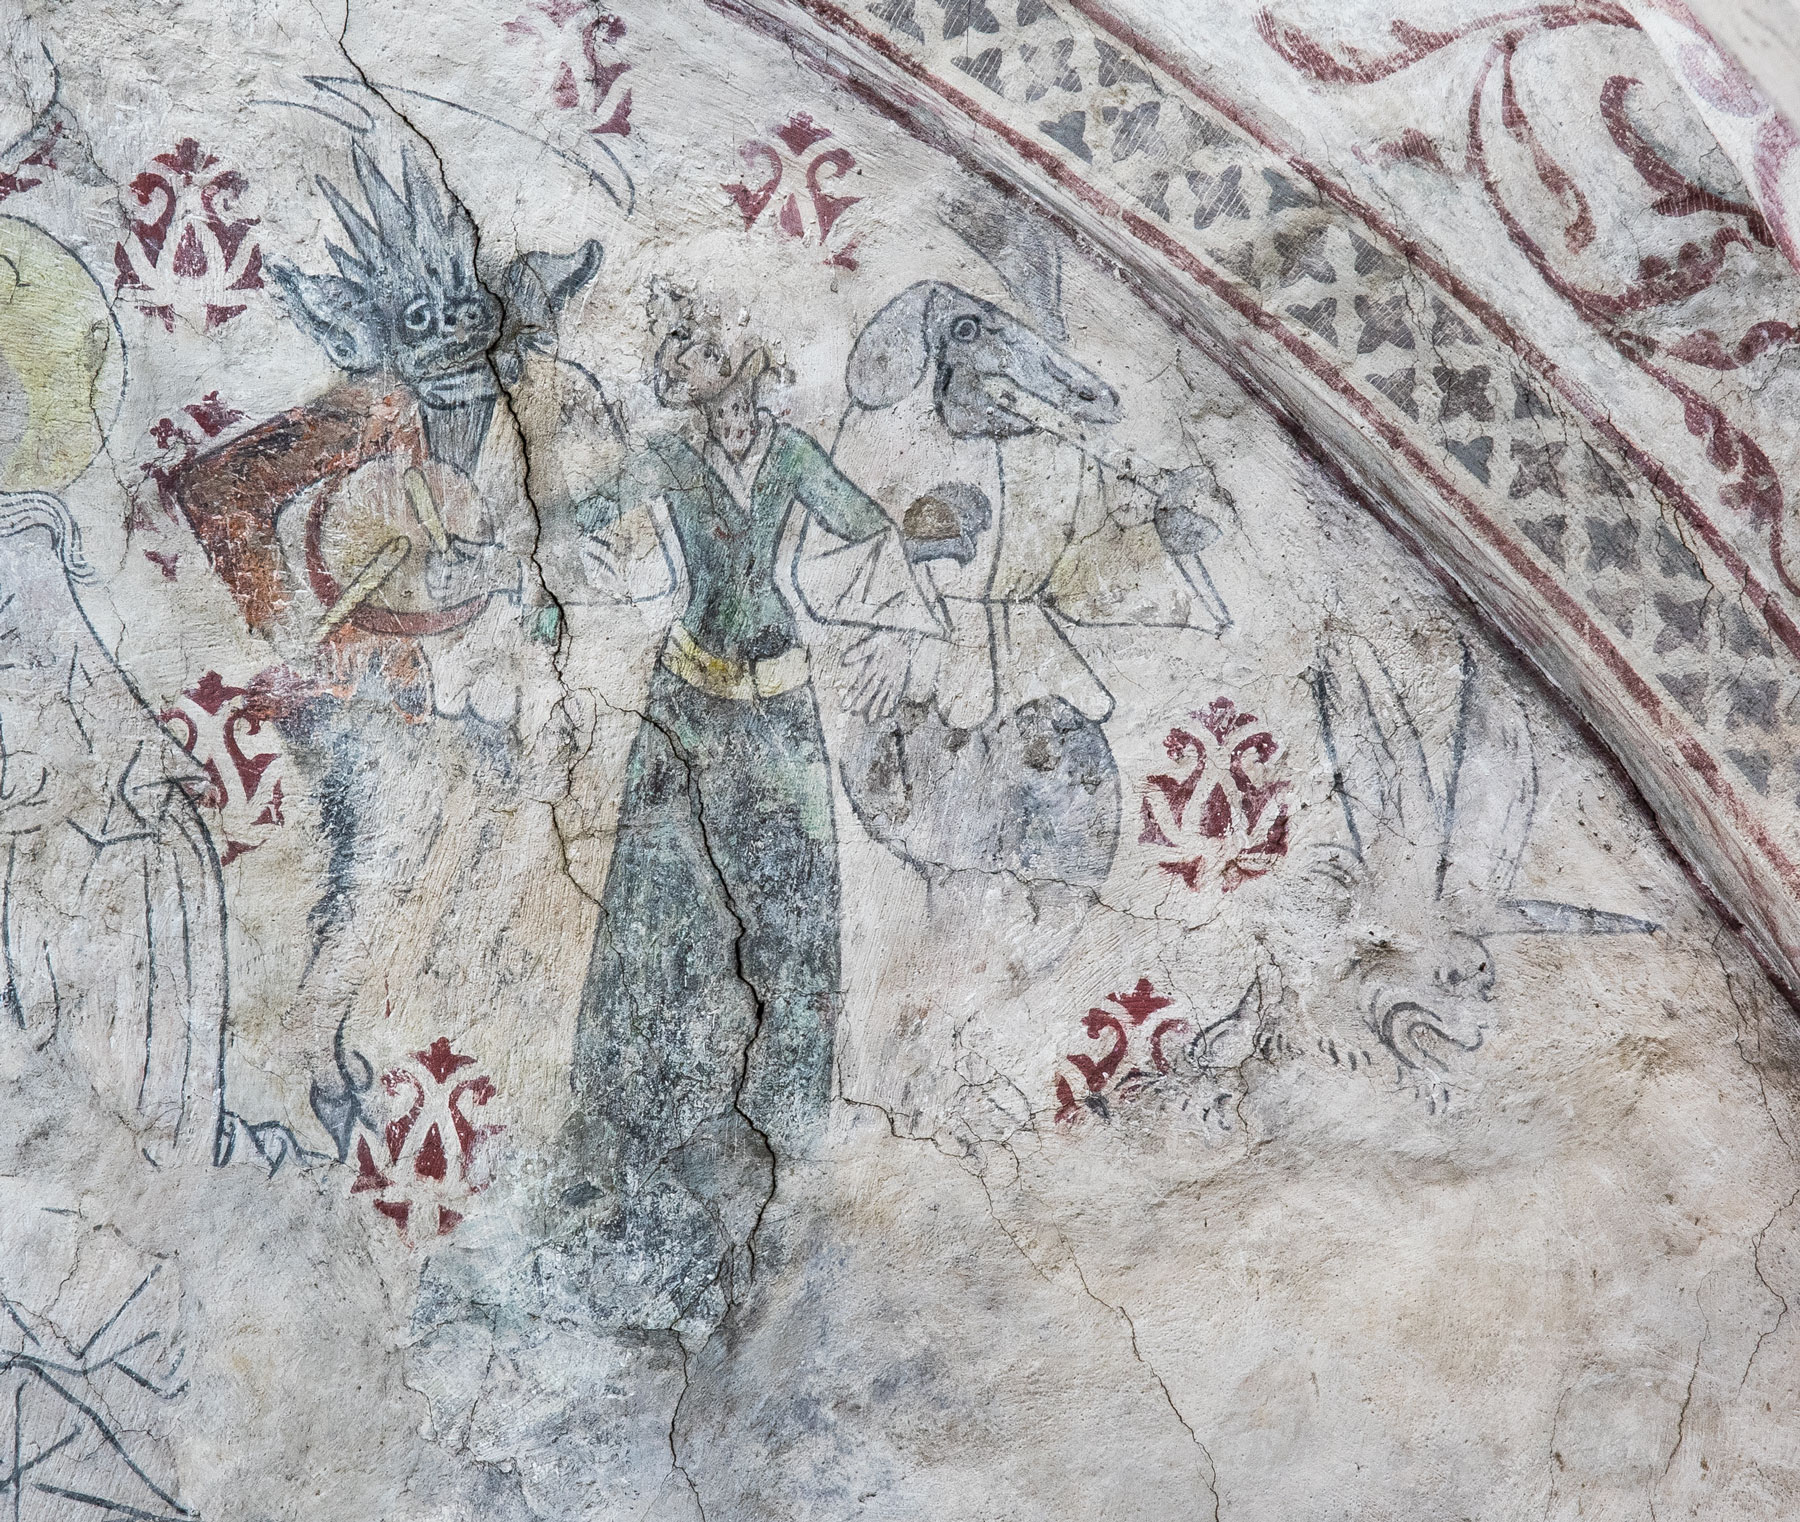 En kvinna förs dansande bort av djävulen och en demon. Detalj ur Yttersta domen - Torshälla kyrka